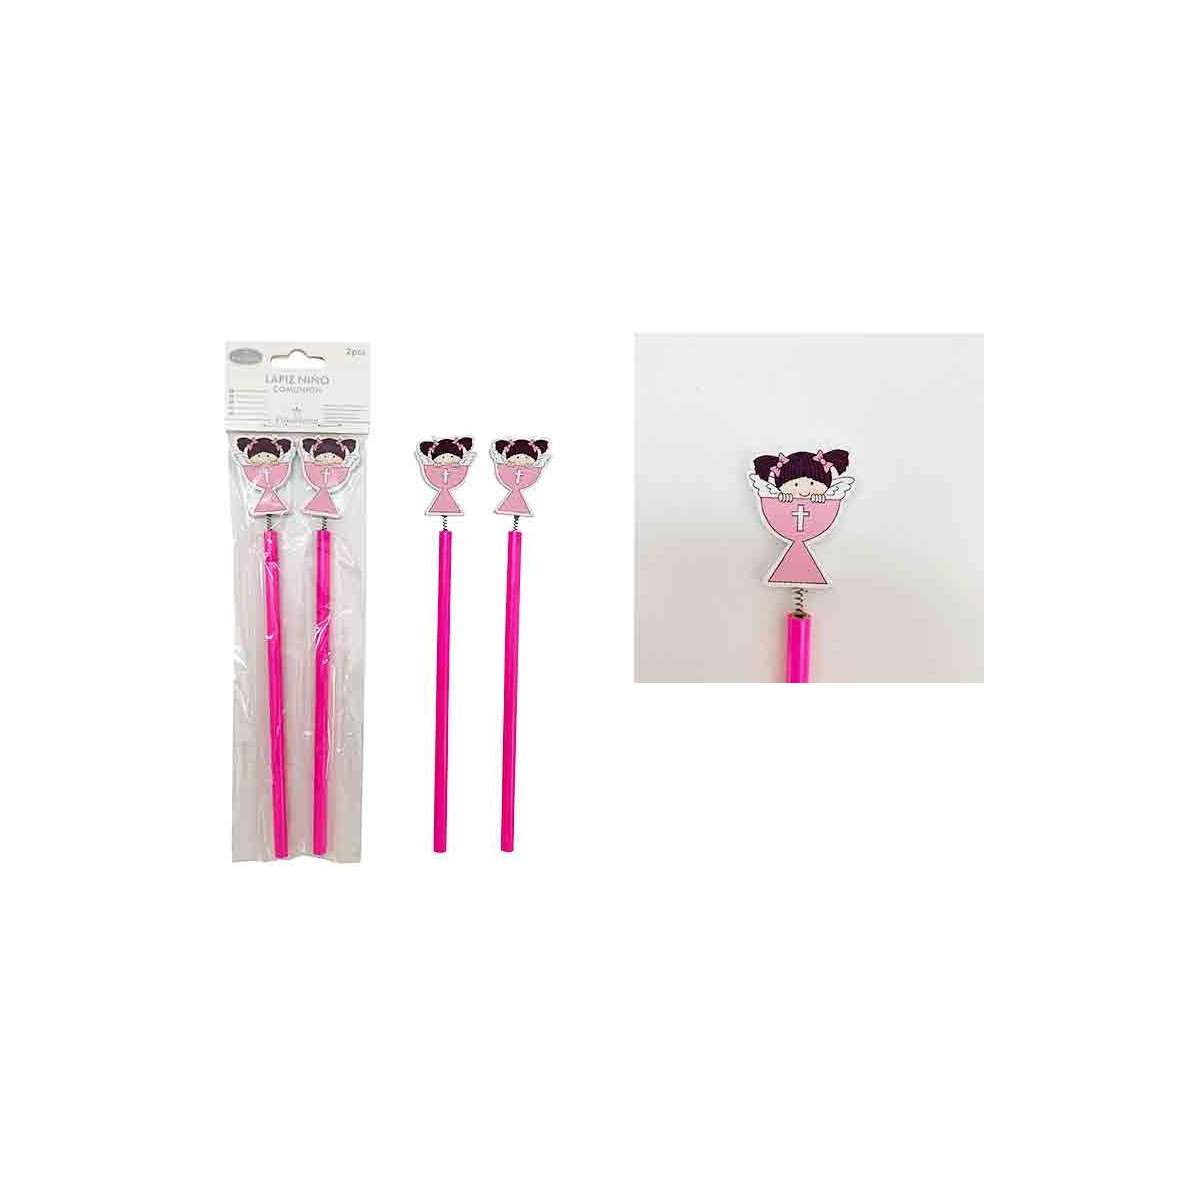 Blister 2 lápices comunion niña rosa